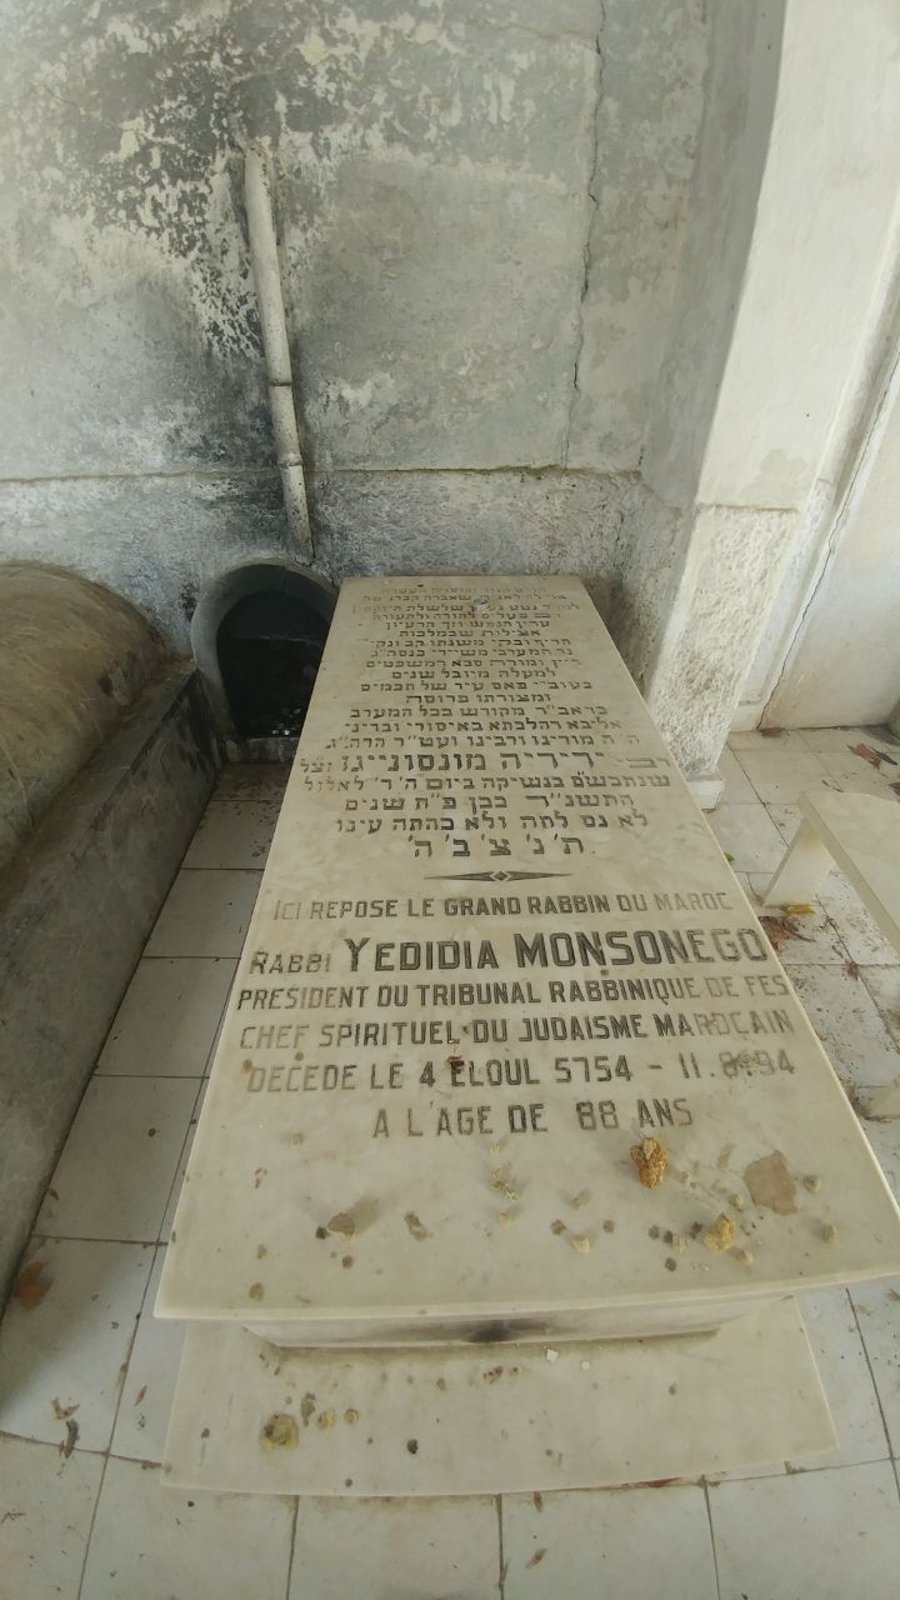 קברו של הרב ידידיה מונסנגו